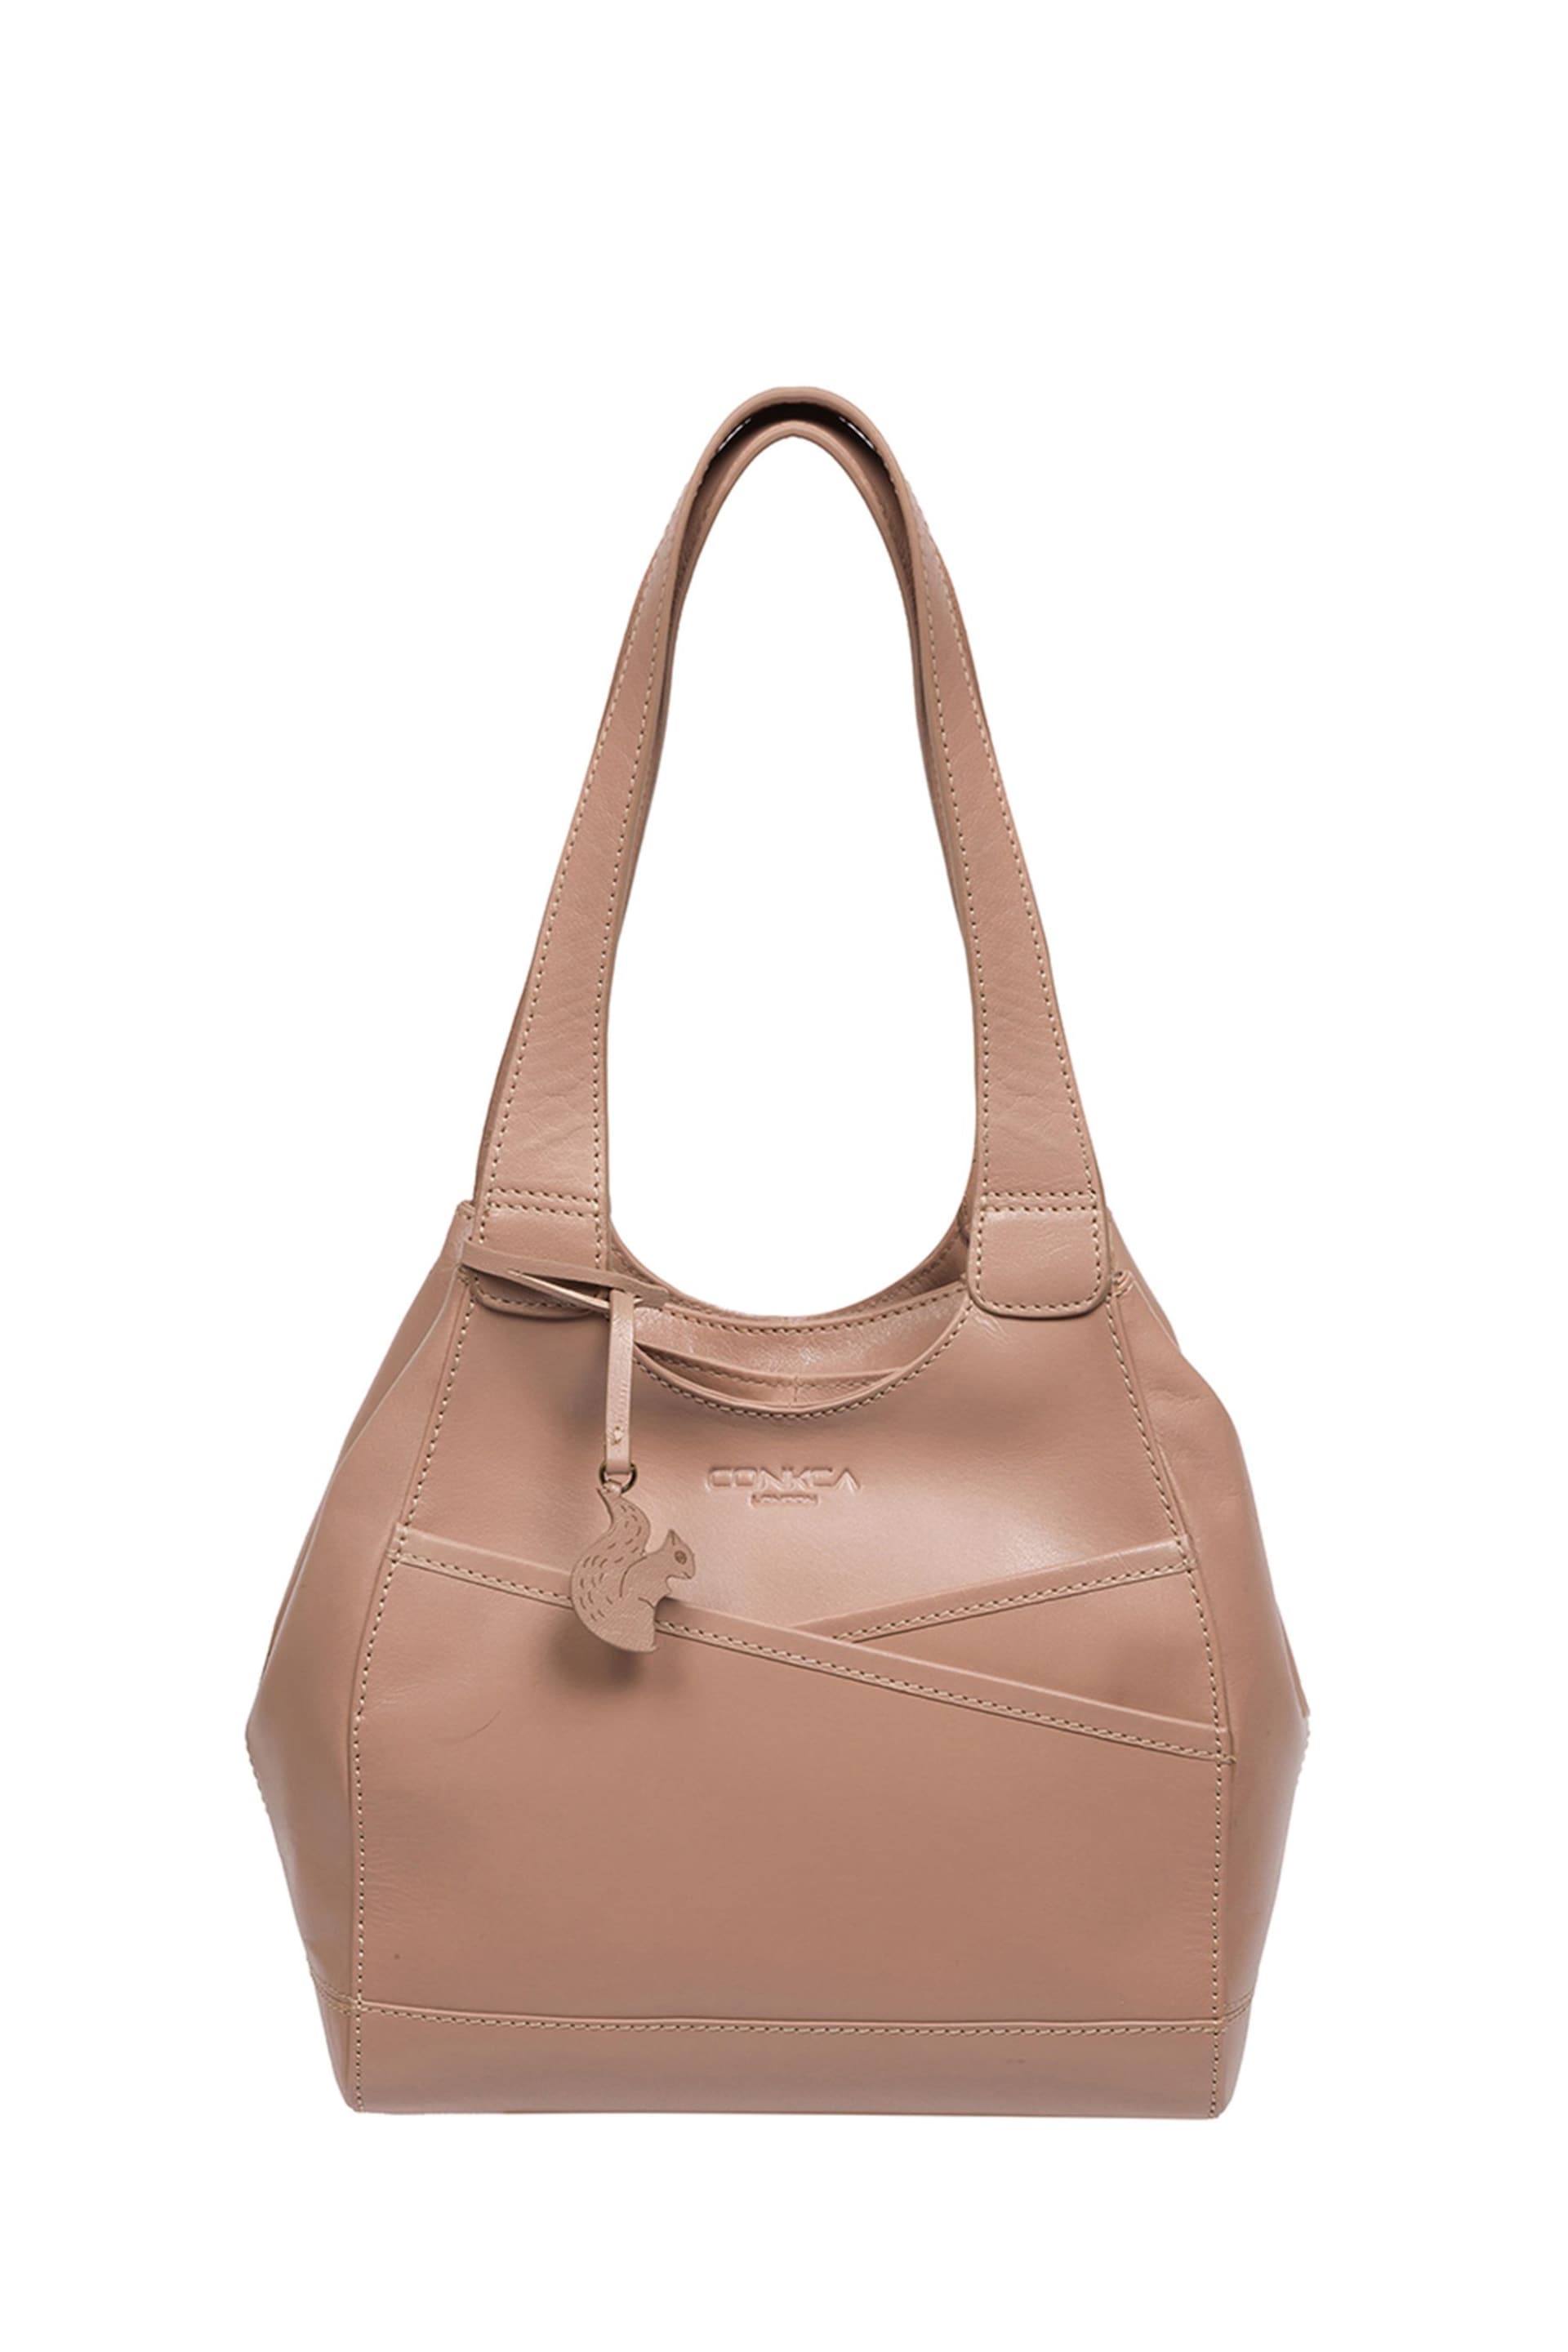 Conkca Juliet Handbag - Image 3 of 8